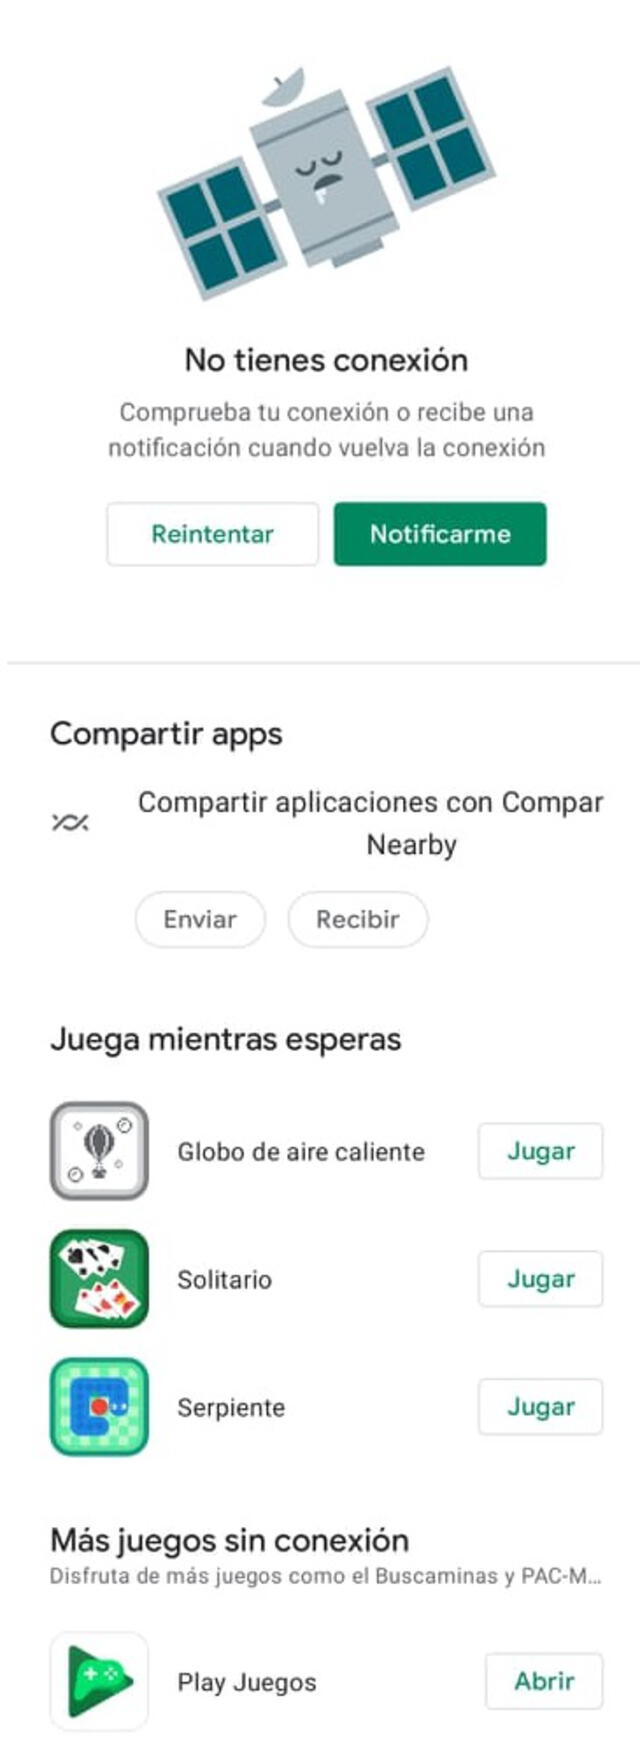 Juegos sin conexión a internet - Aplicaciones en Google Play